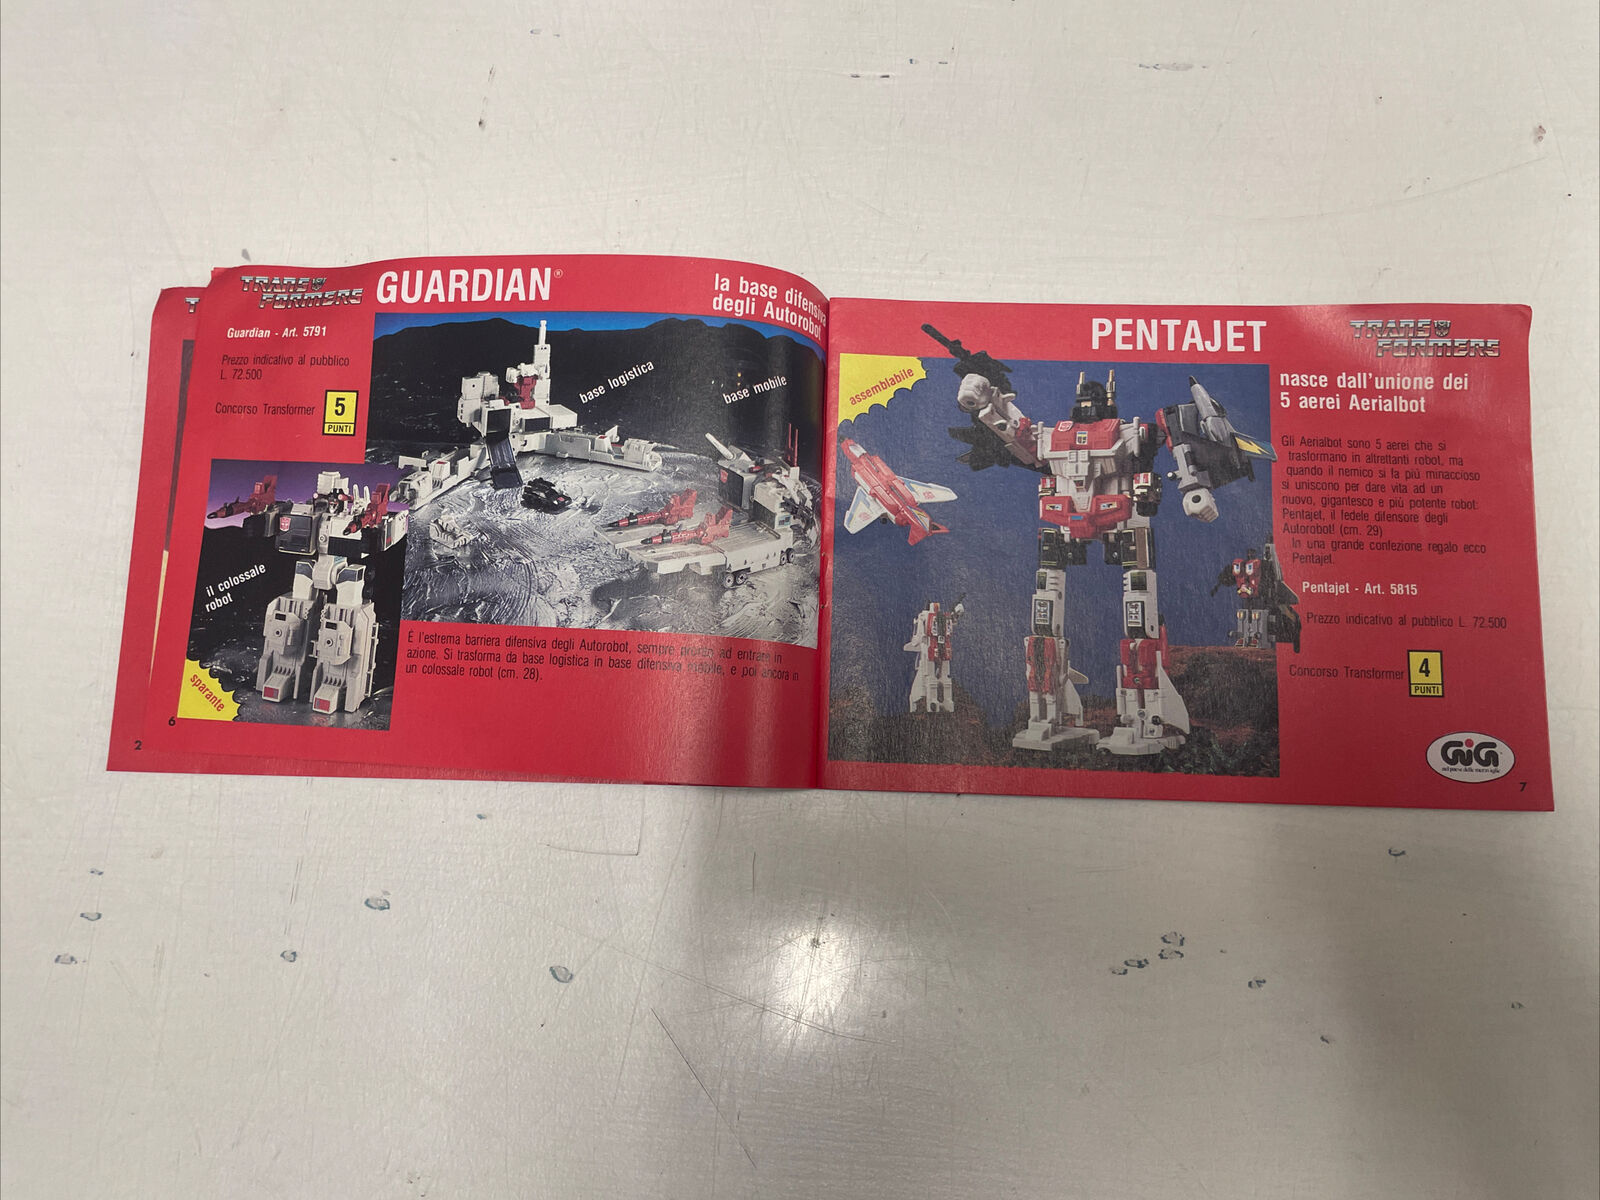 Transformers-catalogo-Anni-80-GIG-Giochiamo-a-Trasformer-145340679071-4